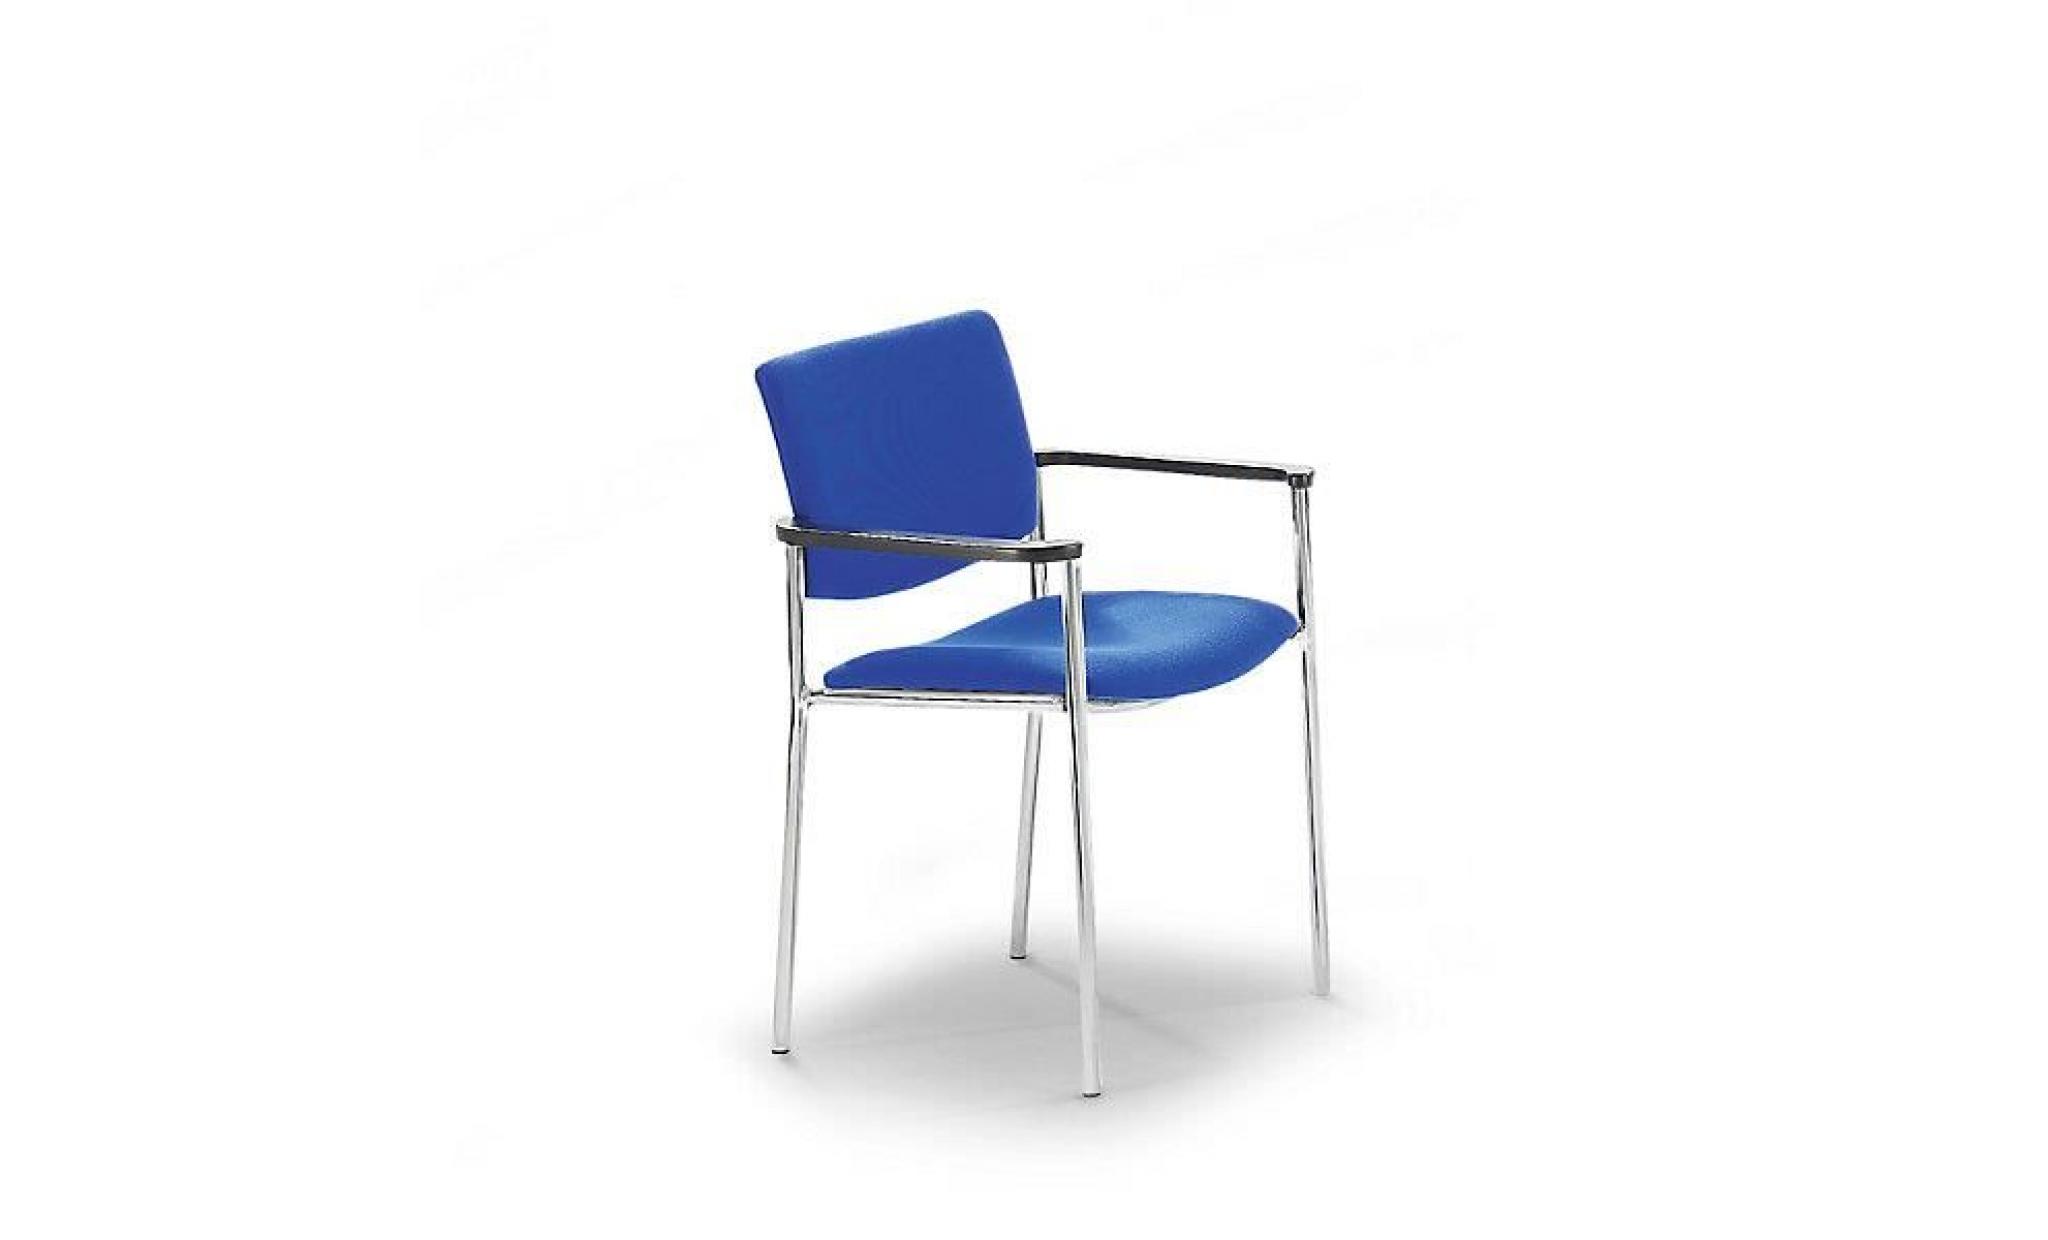 siège visiteur rembourré à patins en plastique   piétement chromé habillage bleu   chaise de conférence chaise de réunion chaise